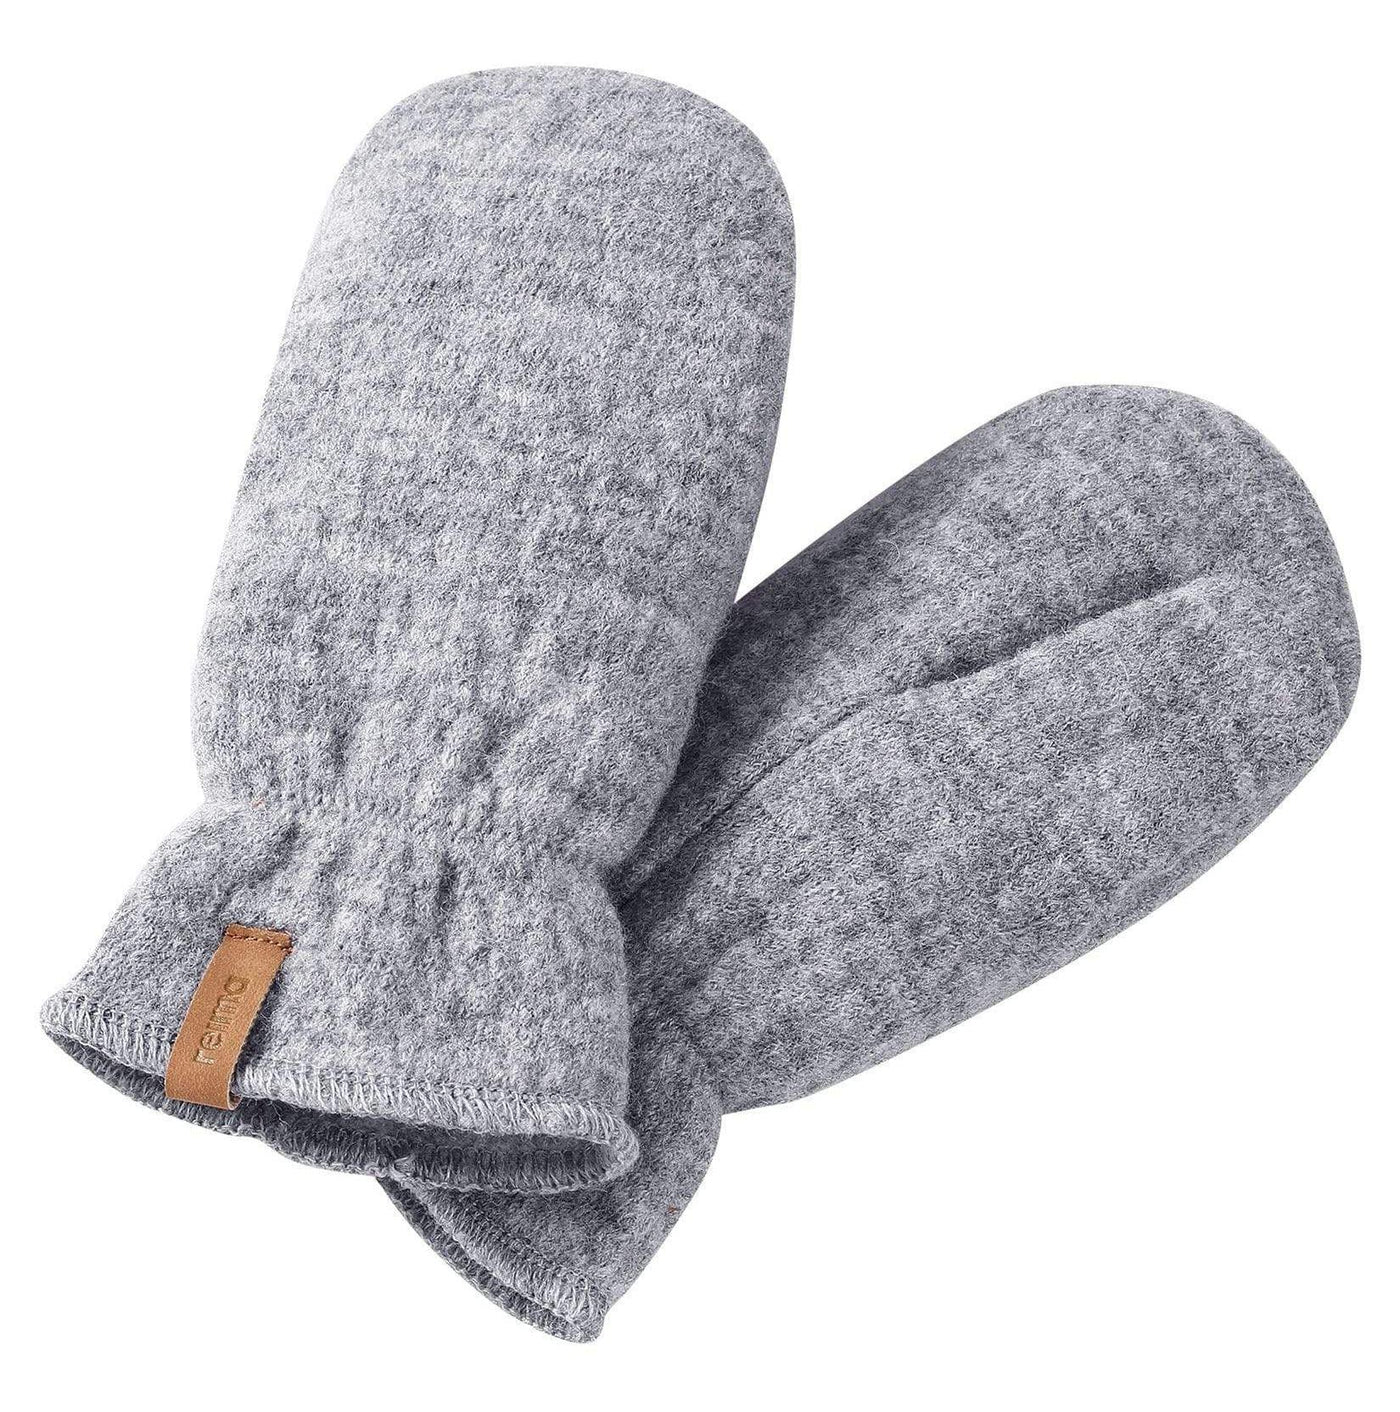 SnowKids Accessories 2-4YO Reima Hangen Knitted Wool Mittens - Grey Melange